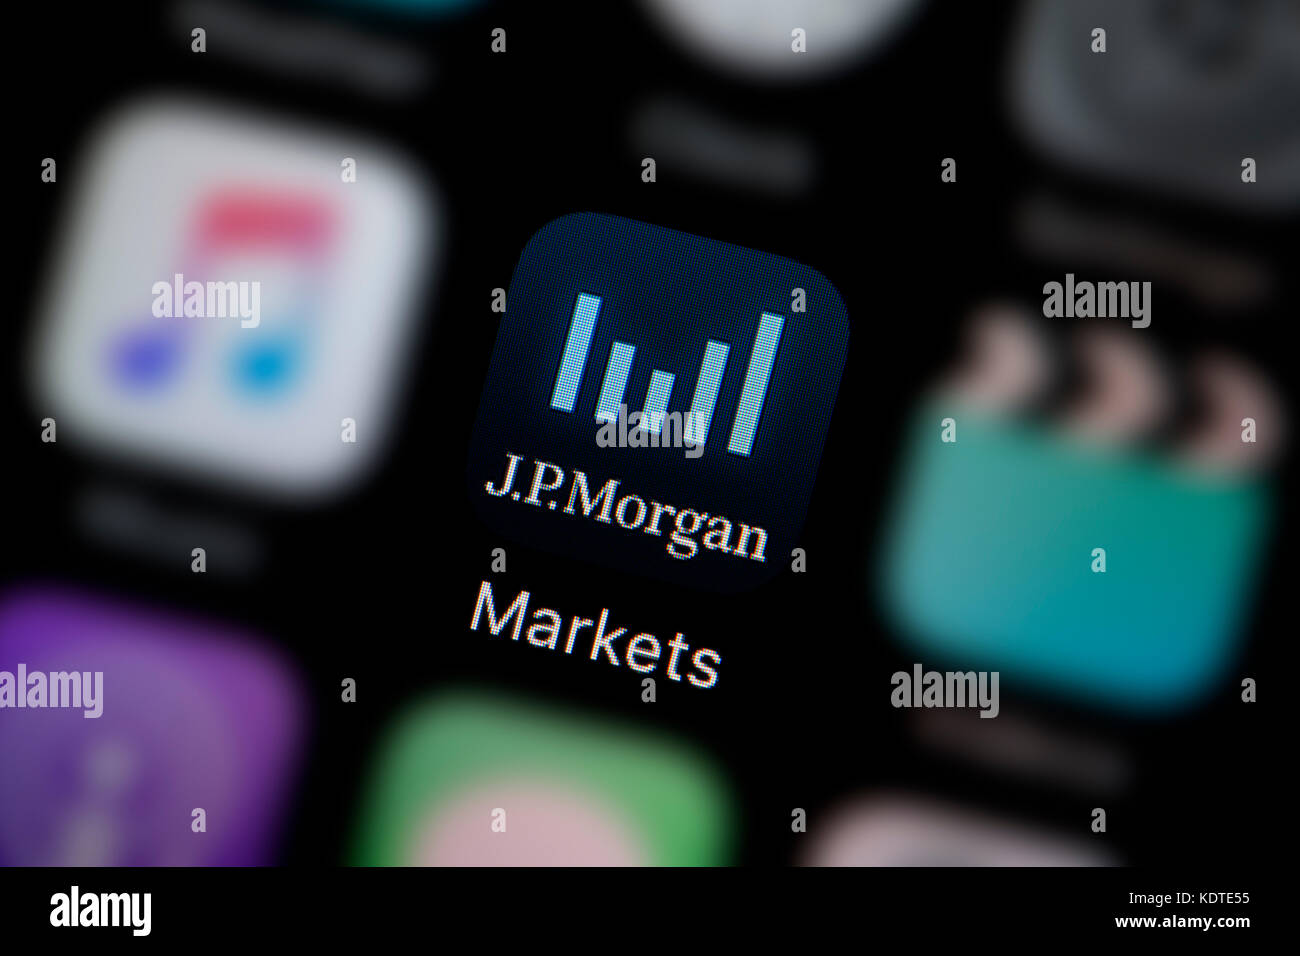 Un gros plan sur le logo représentant l'icône de l'application des marchés de JP Morgan, comme on le voit sur l'écran d'un téléphone intelligent (usage éditorial uniquement) Banque D'Images